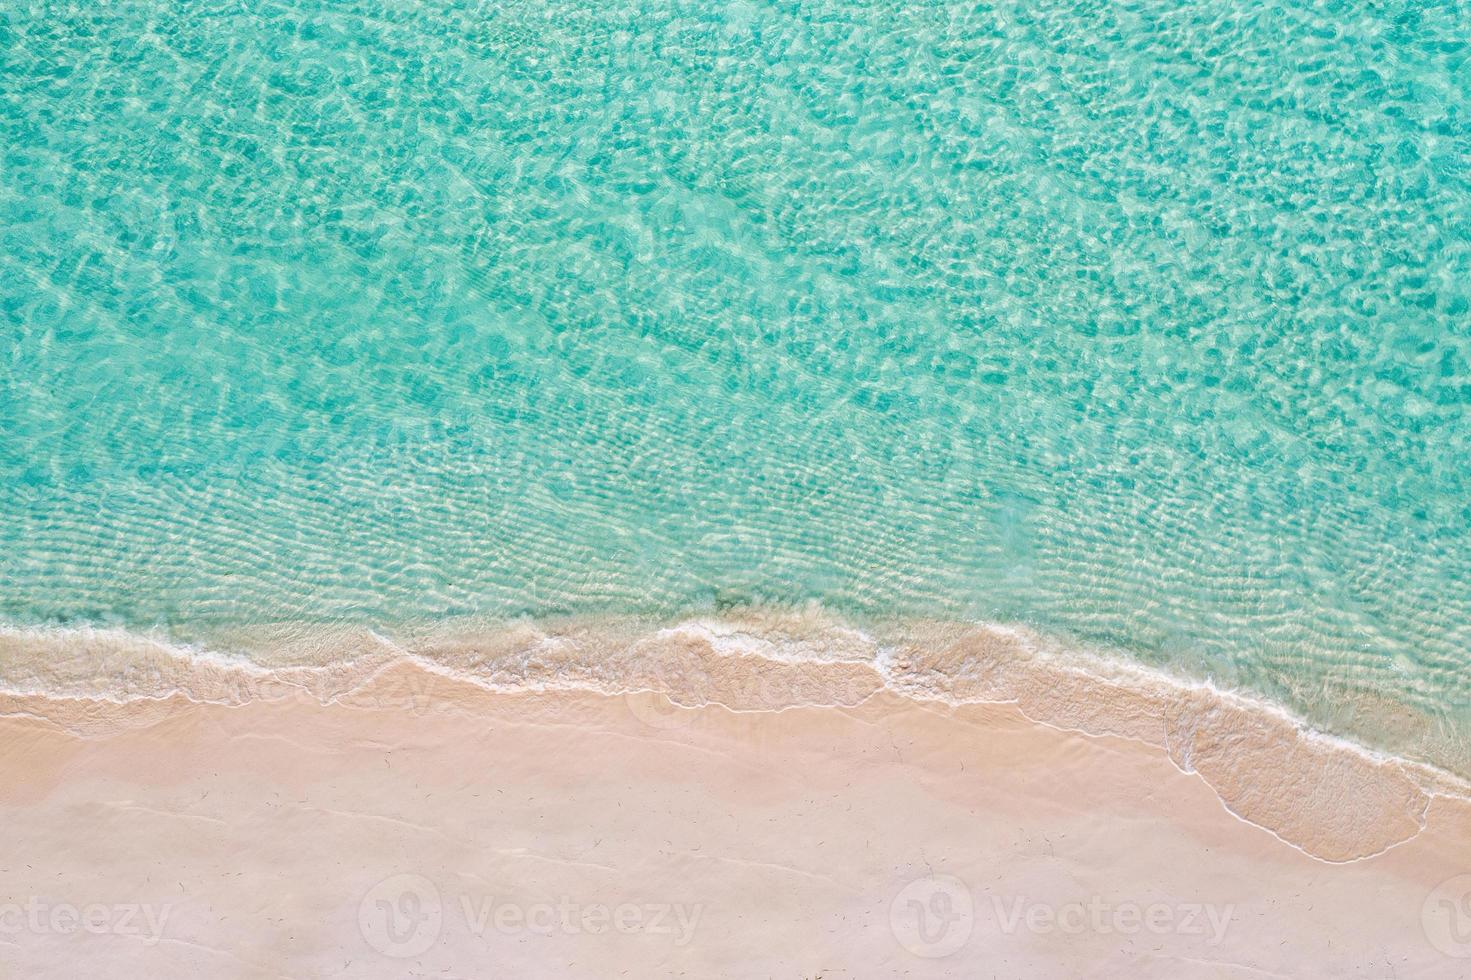 scène de plage aérienne relaxante, bannière de modèle de vacances de vacances d'été. les vagues surfent avec un incroyable lagon bleu océan, bord de mer, littoral. vue de dessus de drone aérien parfait. plage lumineuse paisible, bord de mer photo